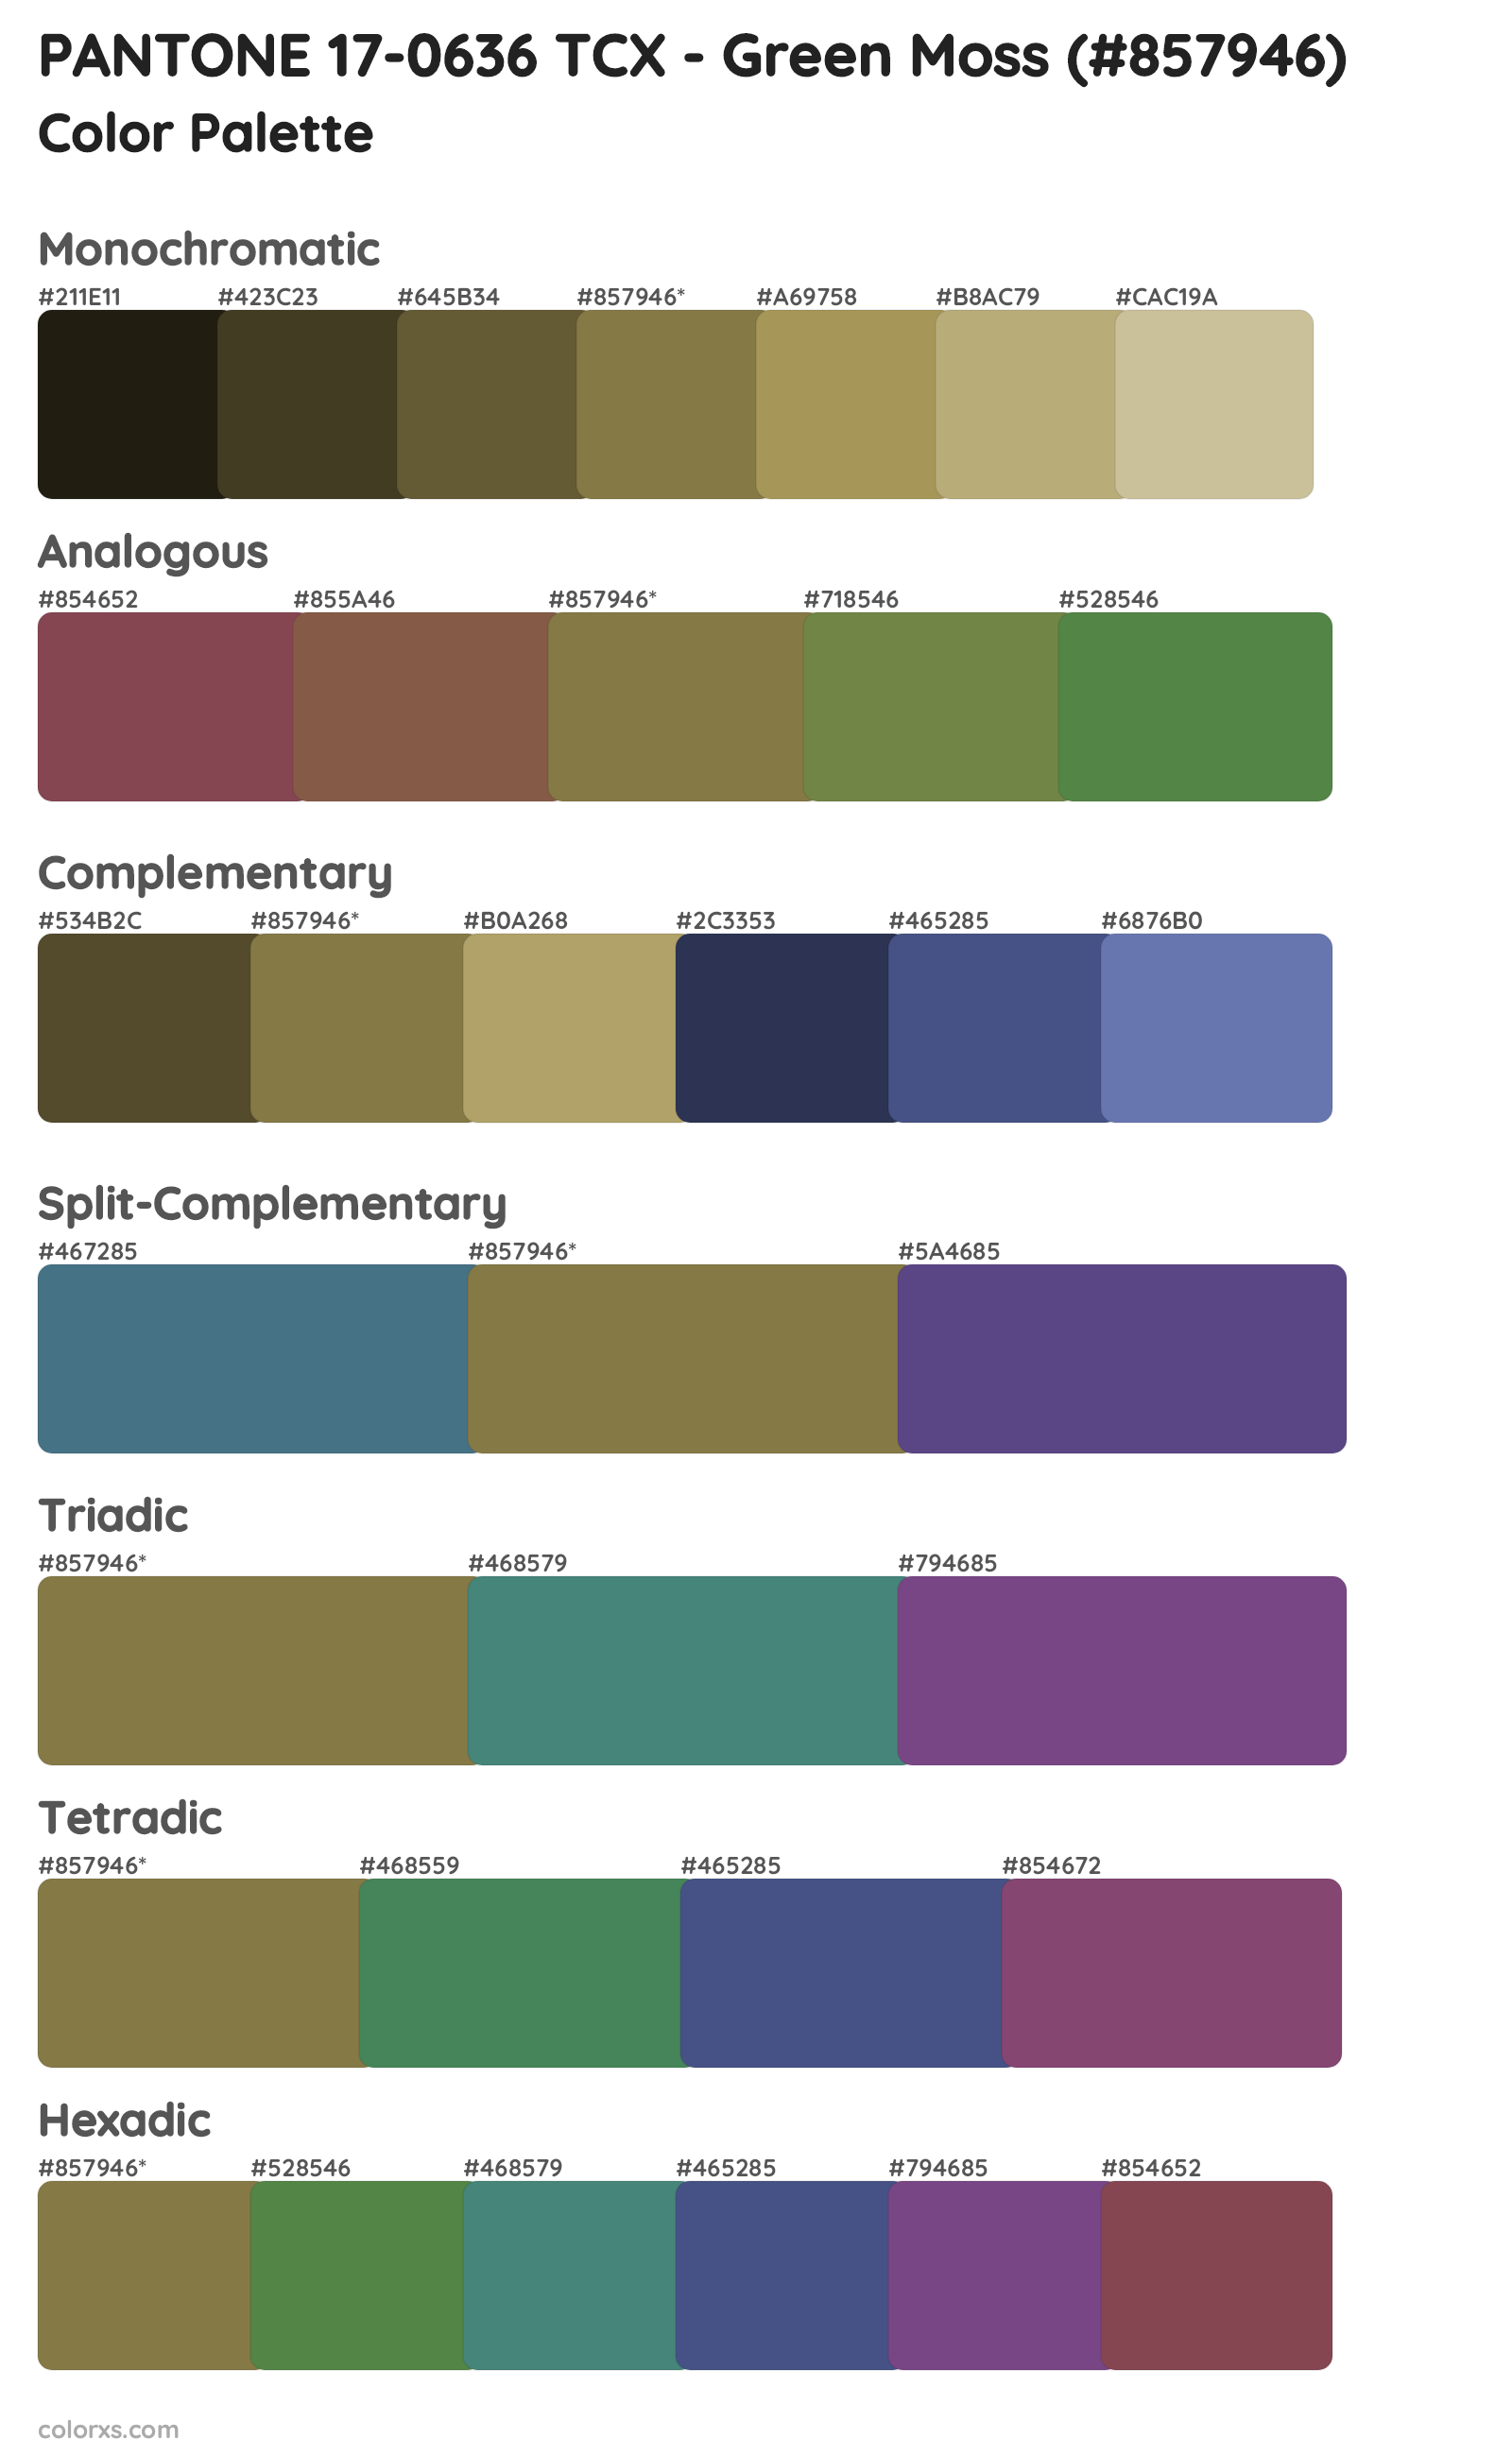 PANTONE 17-0636 TCX - Green Moss Color Scheme Palettes